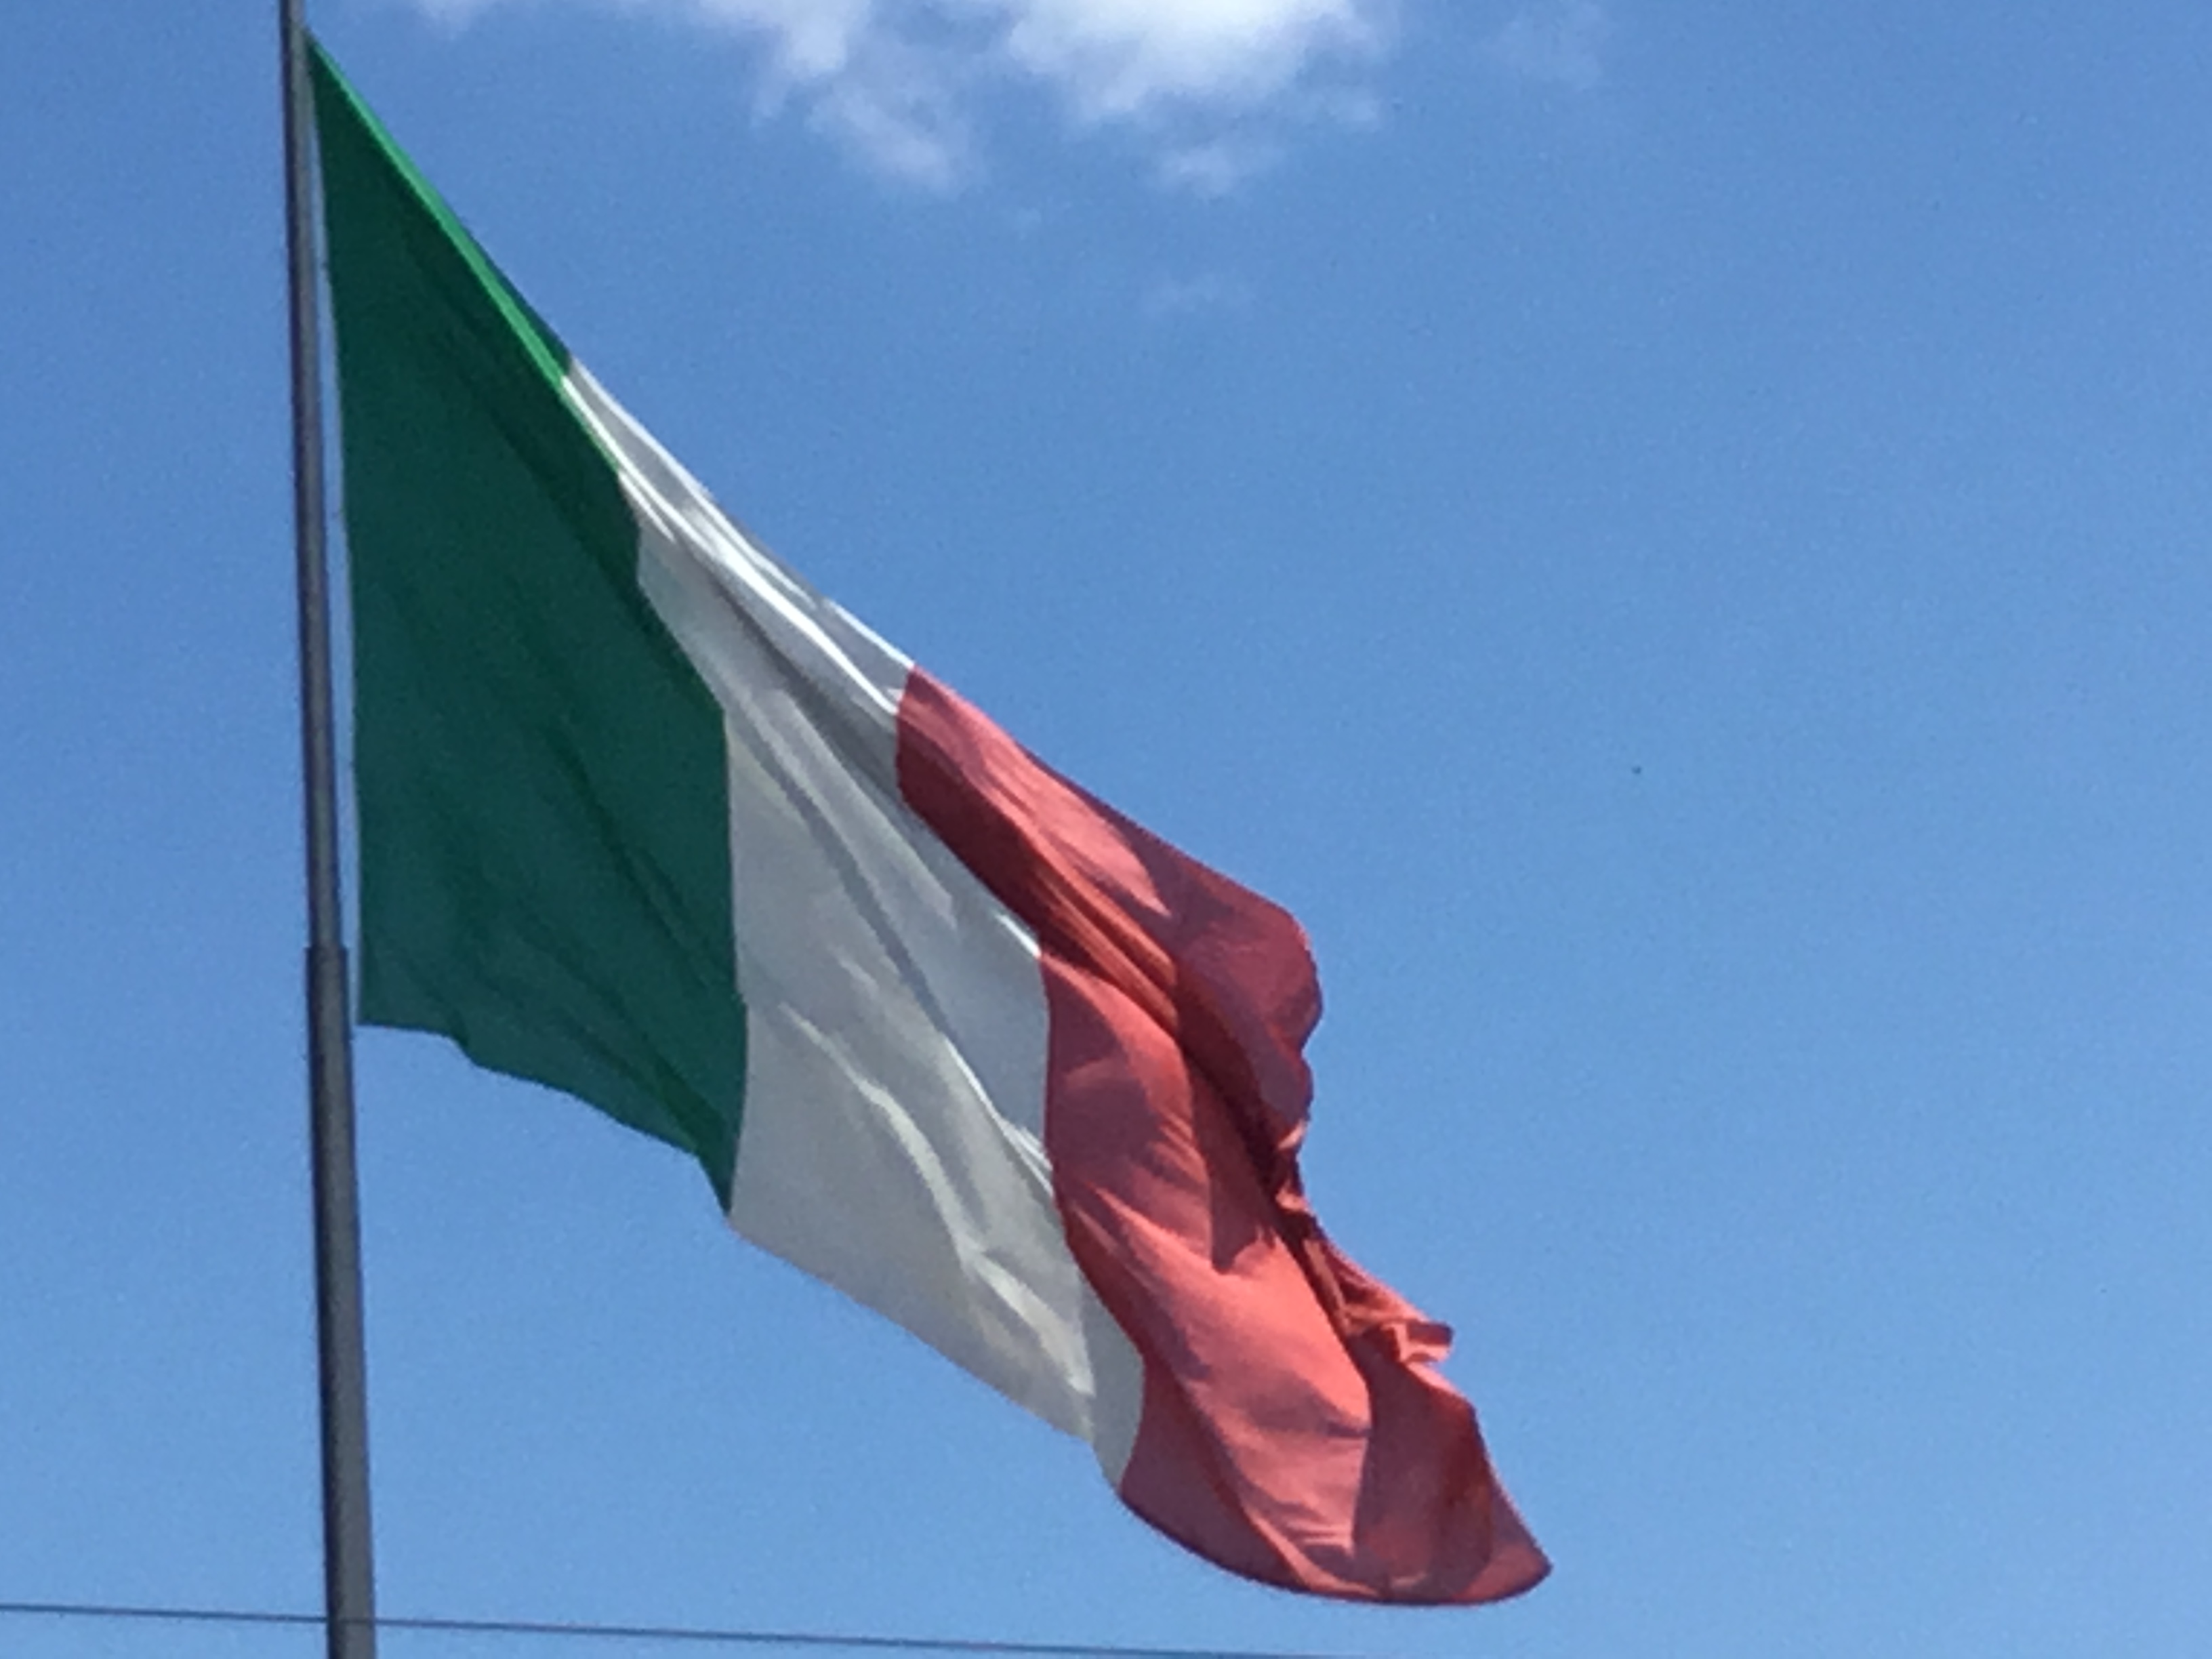 Bandiera piazza stazione-Foto Giornalista Franco Mariani (5)